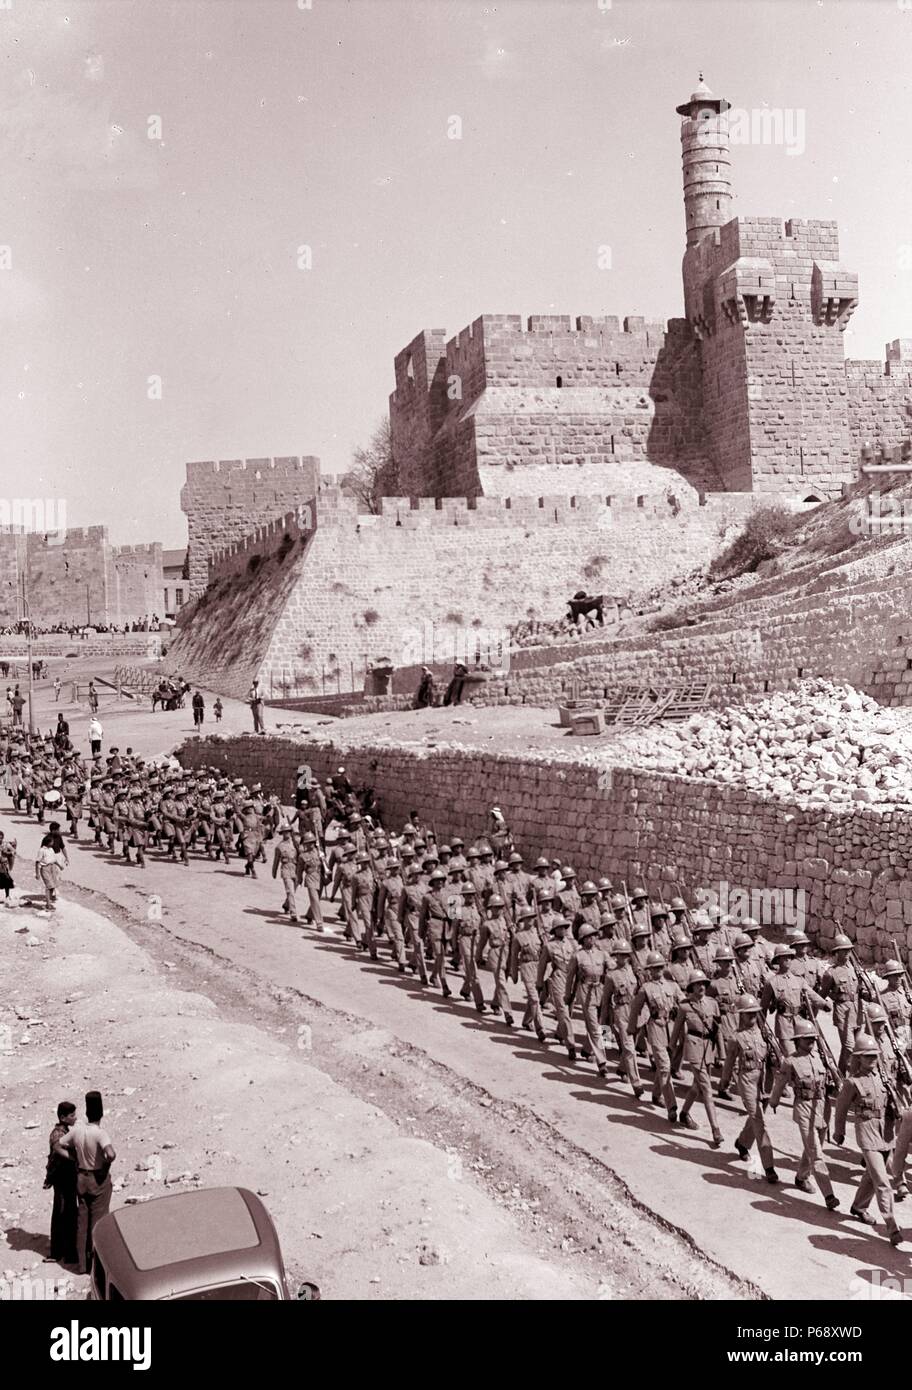 Fotografia di soldati britannici marciando attraverso Gerusalemme passato David Citadel dopo il crollo del dominio ottomano in Palestina. Datata 1917 Foto Stock